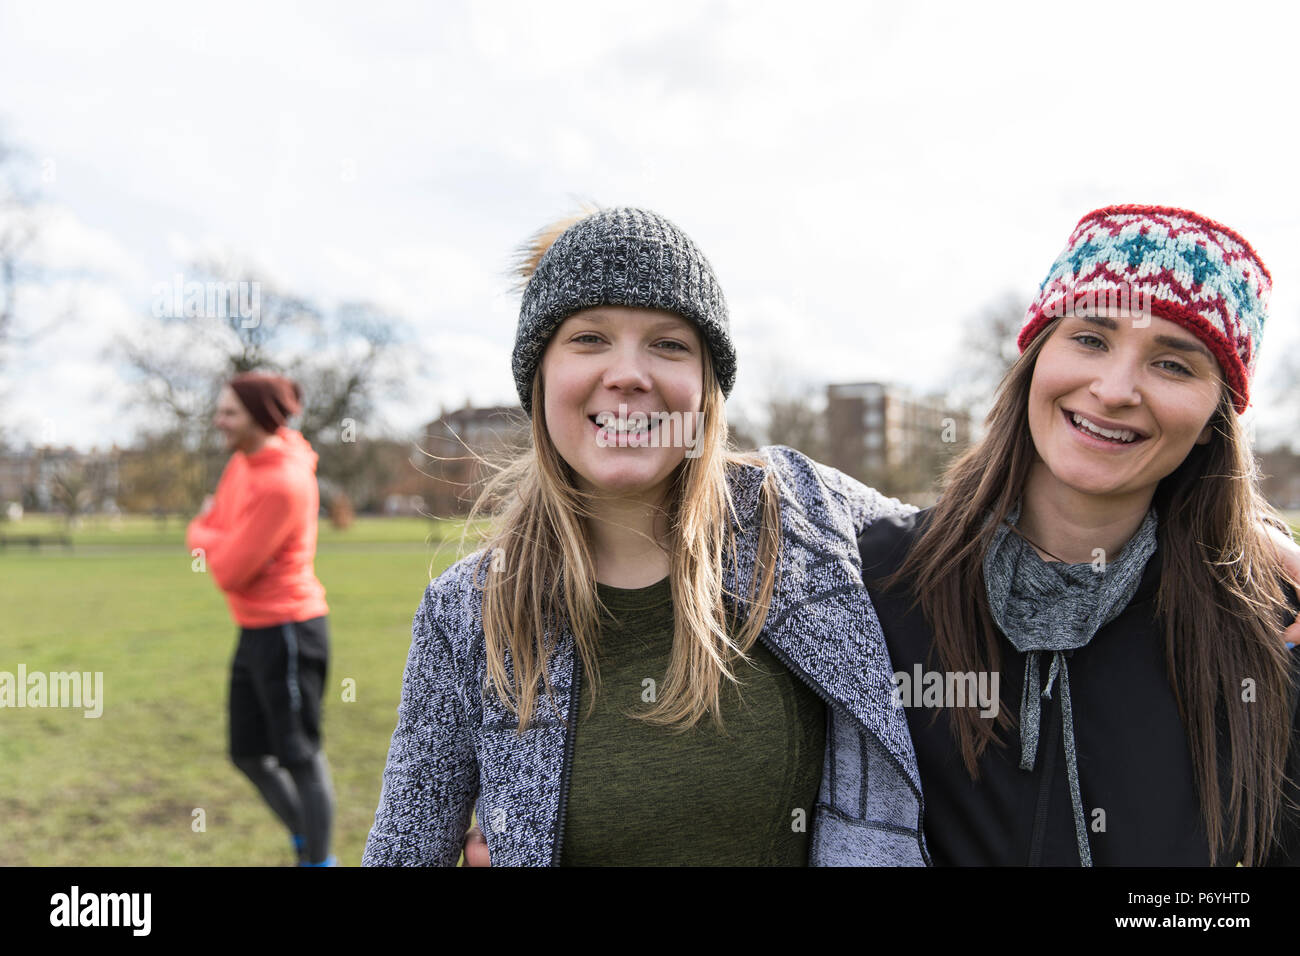 Portrait smiling, confident women in park Stock Photo